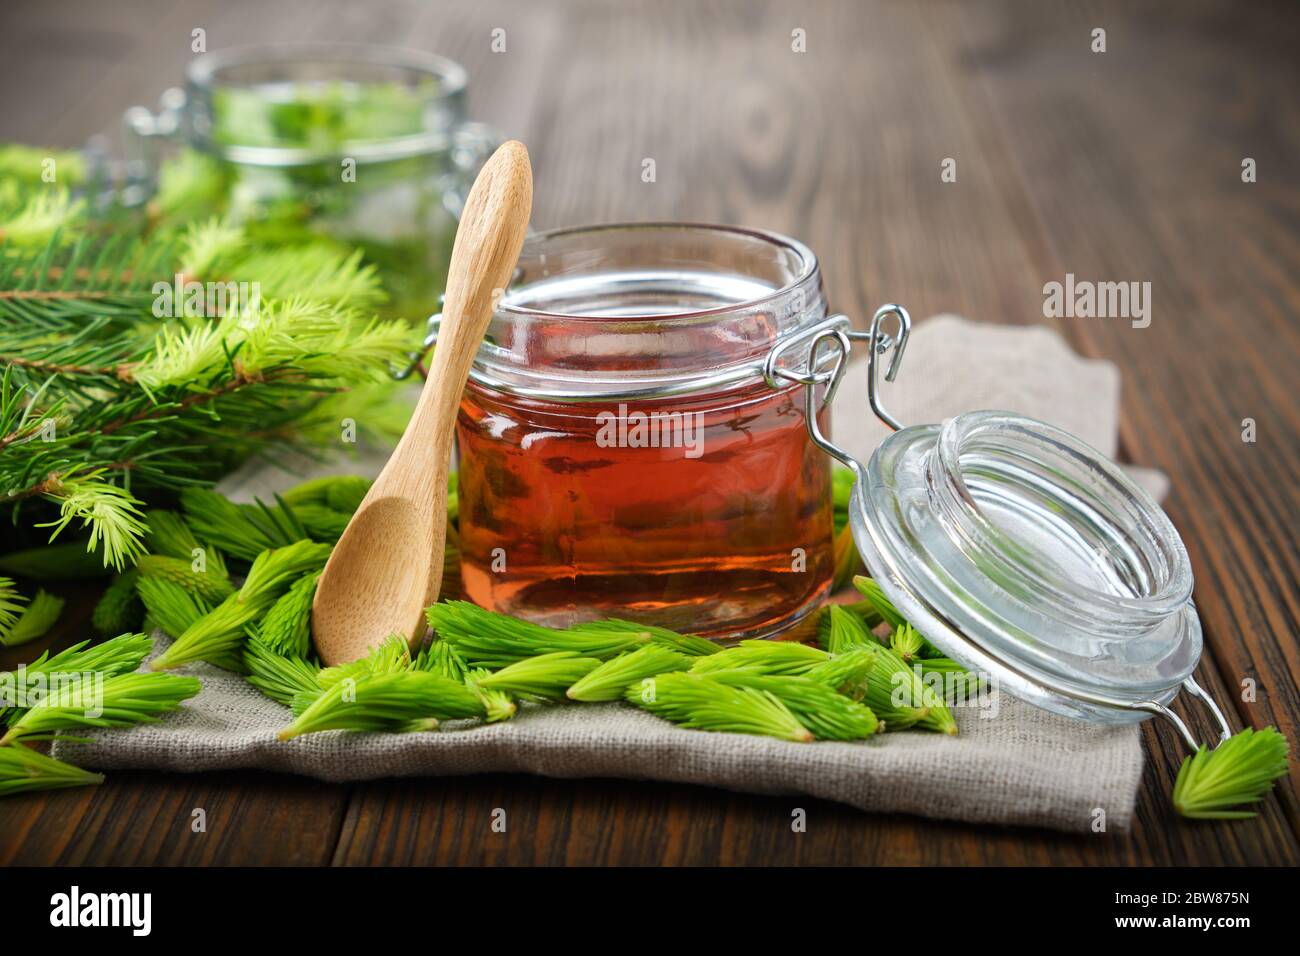 Glas Marmelade, Sirup oder Honig aus Tannenknospen und Nadeln, Zweige der  Tanne auf Holztisch. Herstellung Fichtenspitzen Marmelade zu Hause  Stockfotografie - Alamy